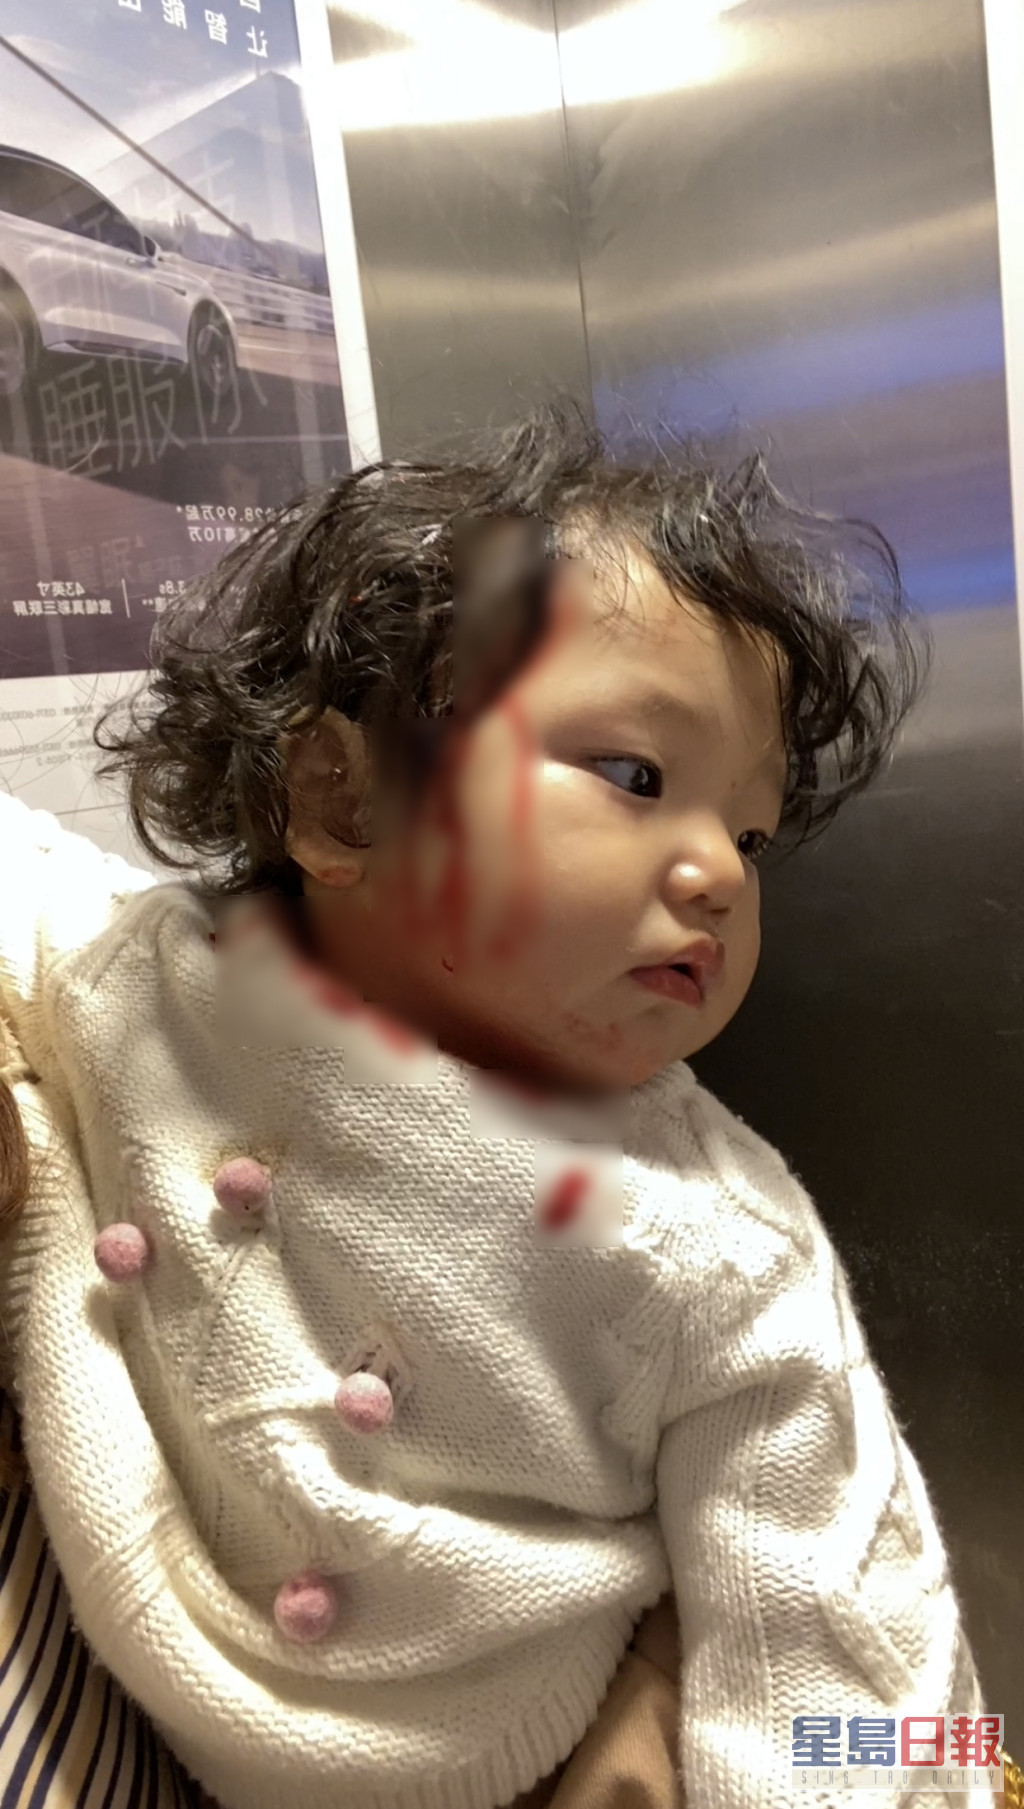 張兆藝上載女兒血流披面的照片。